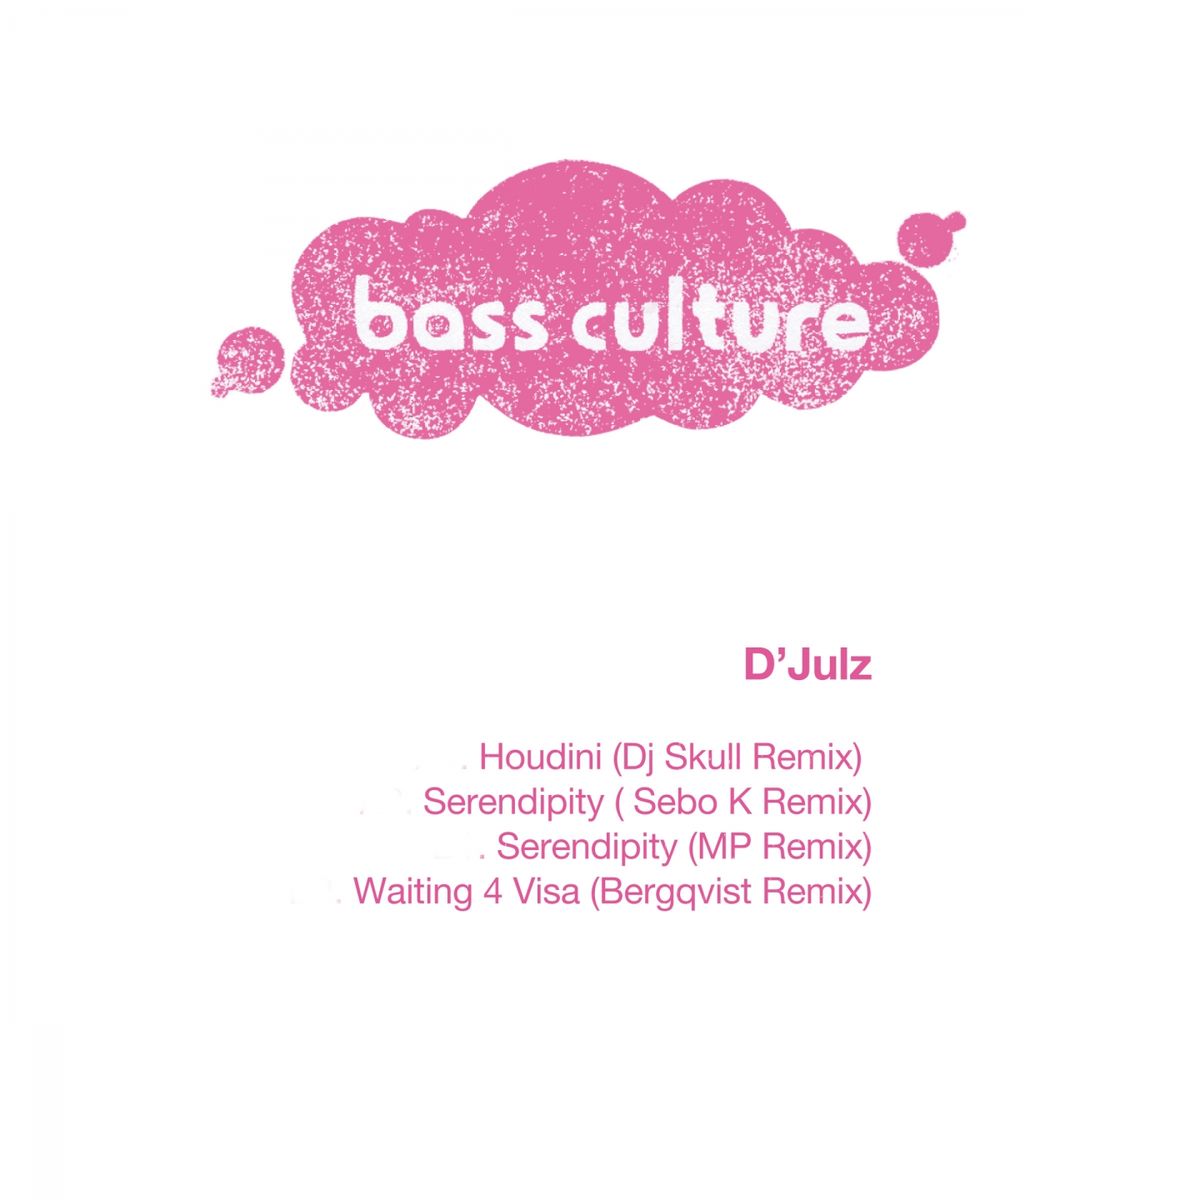 D'Julz - Houdini Remixes / Bass Culture Records